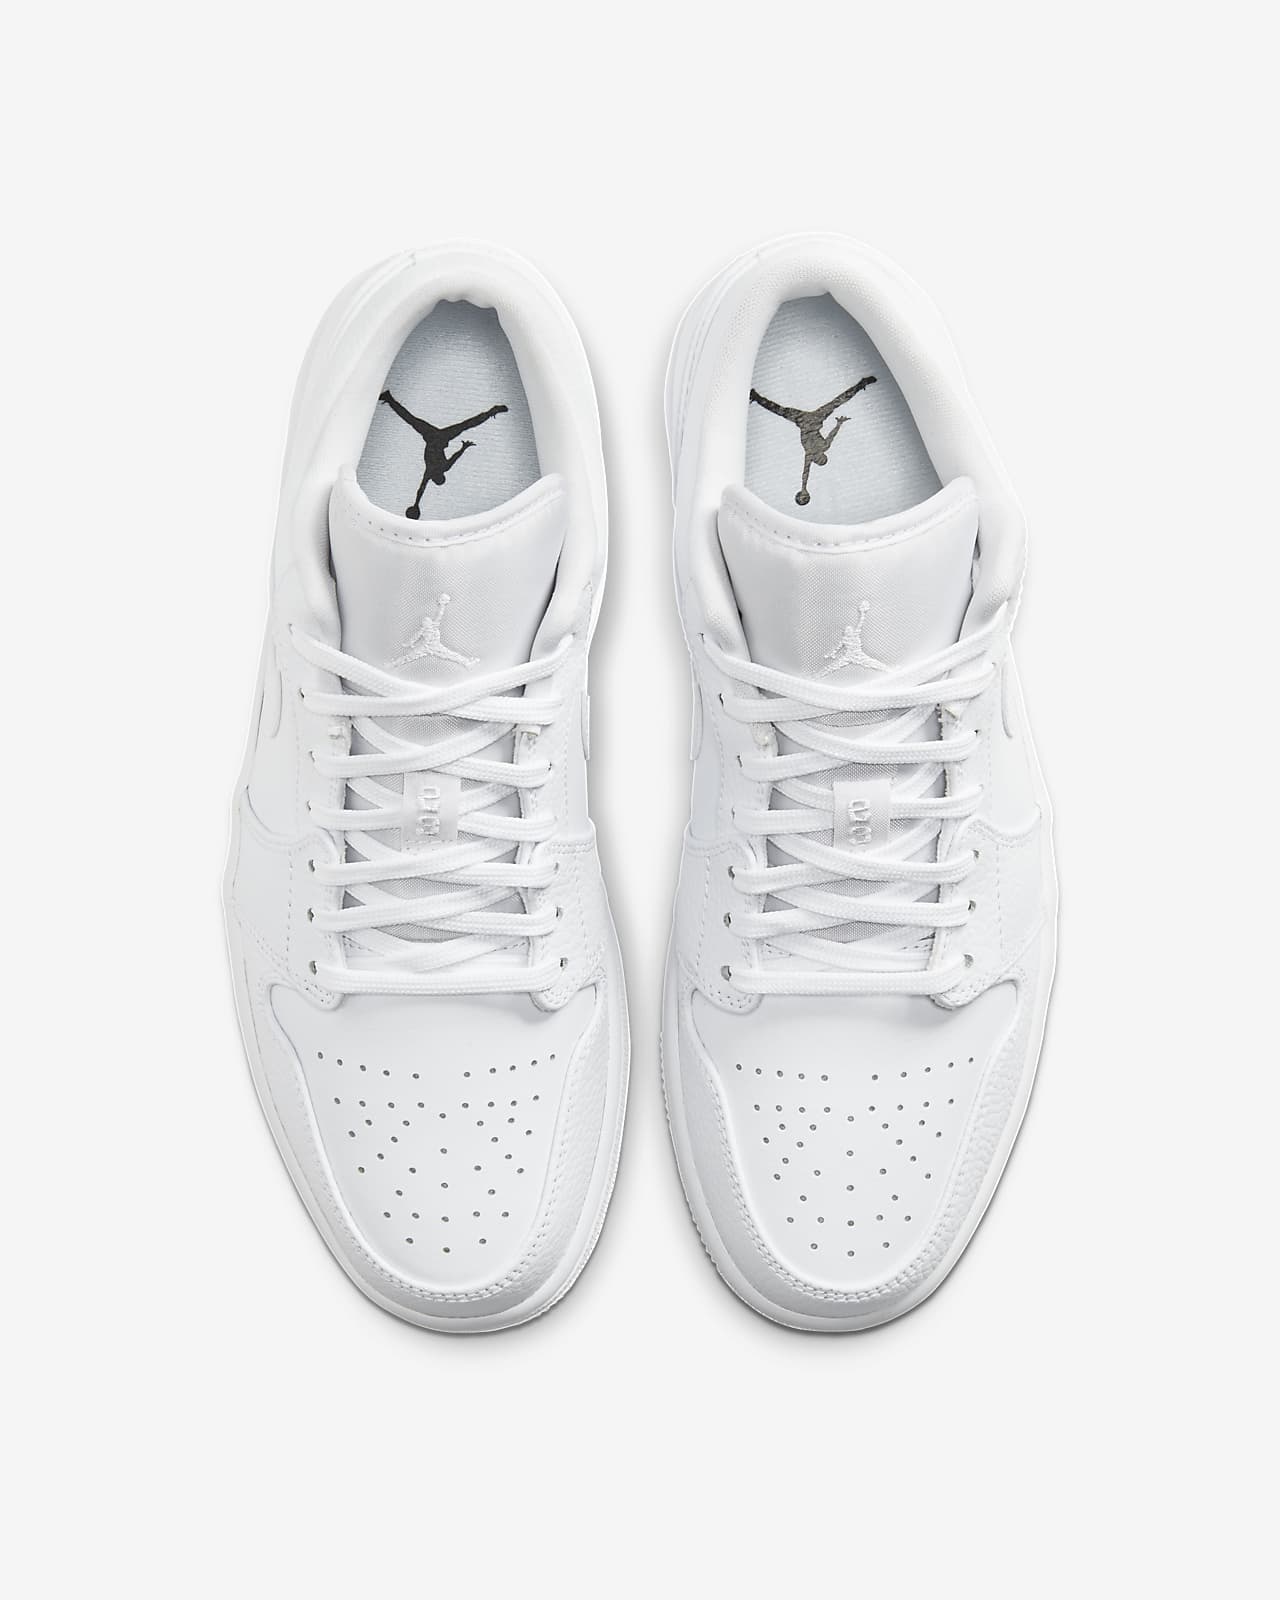 Calzado Air Jordan 1 Low. Nike MX